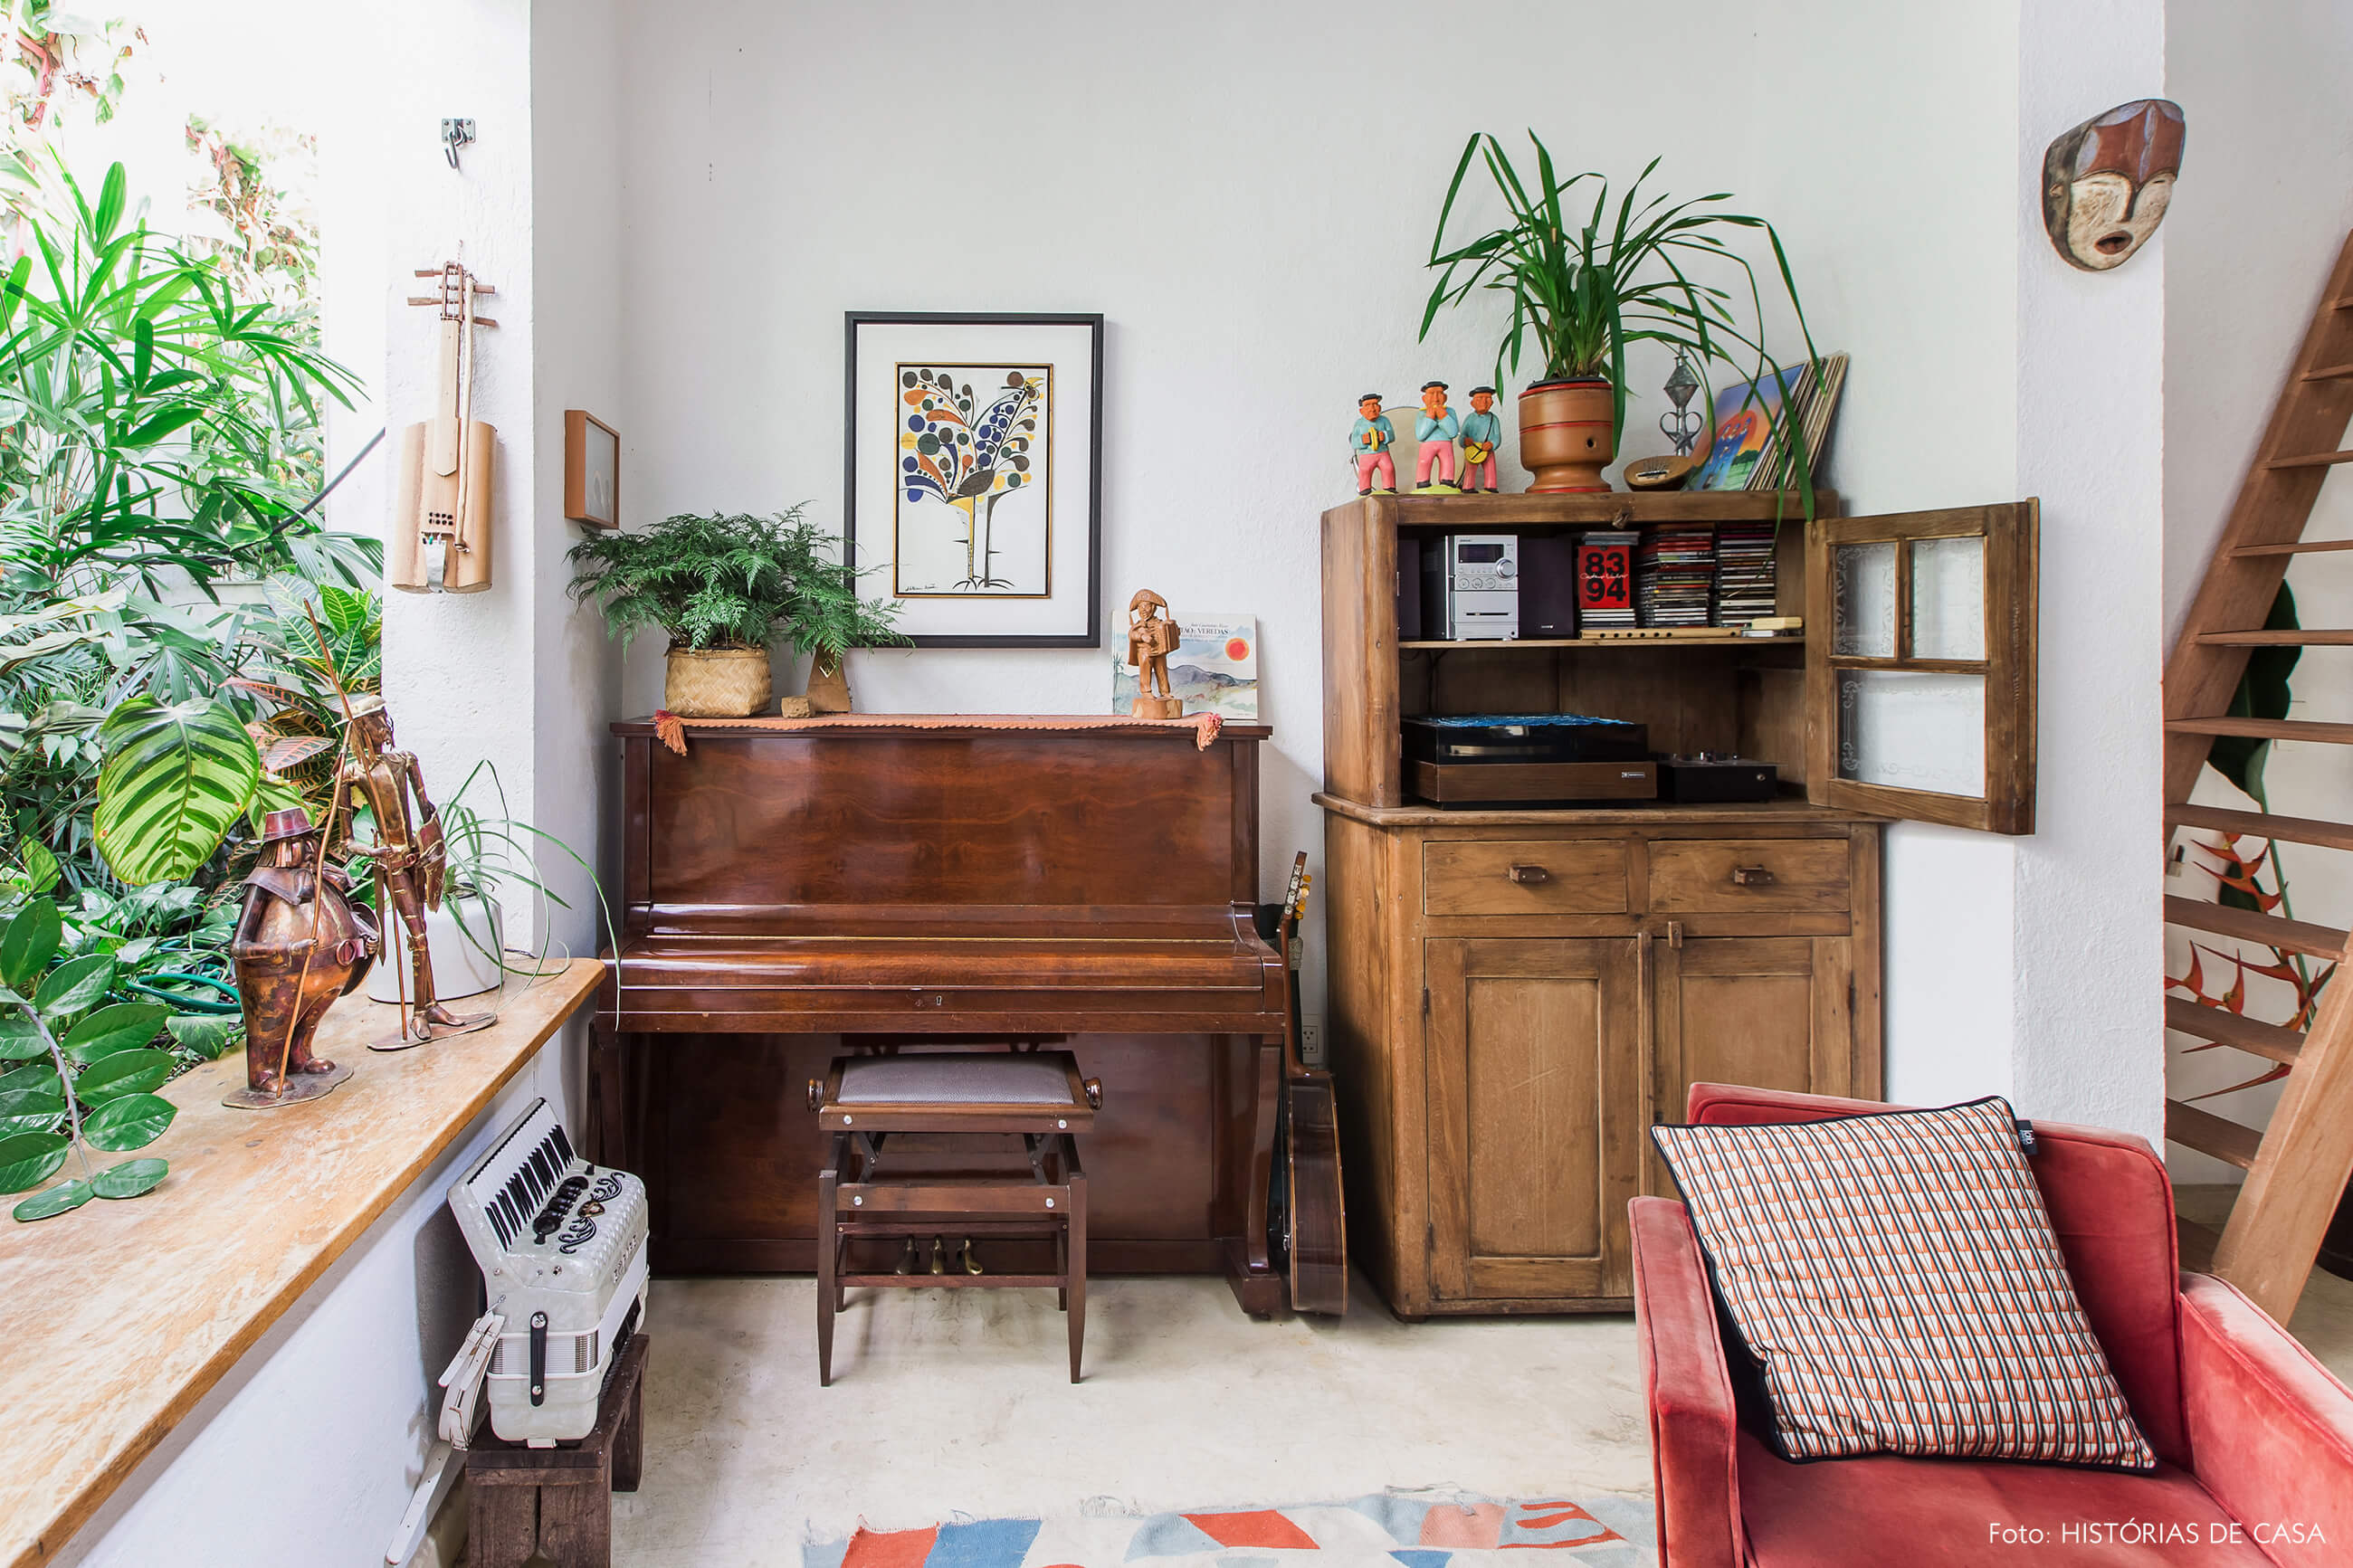 Casa com mezanino, piano e móveis de madeira